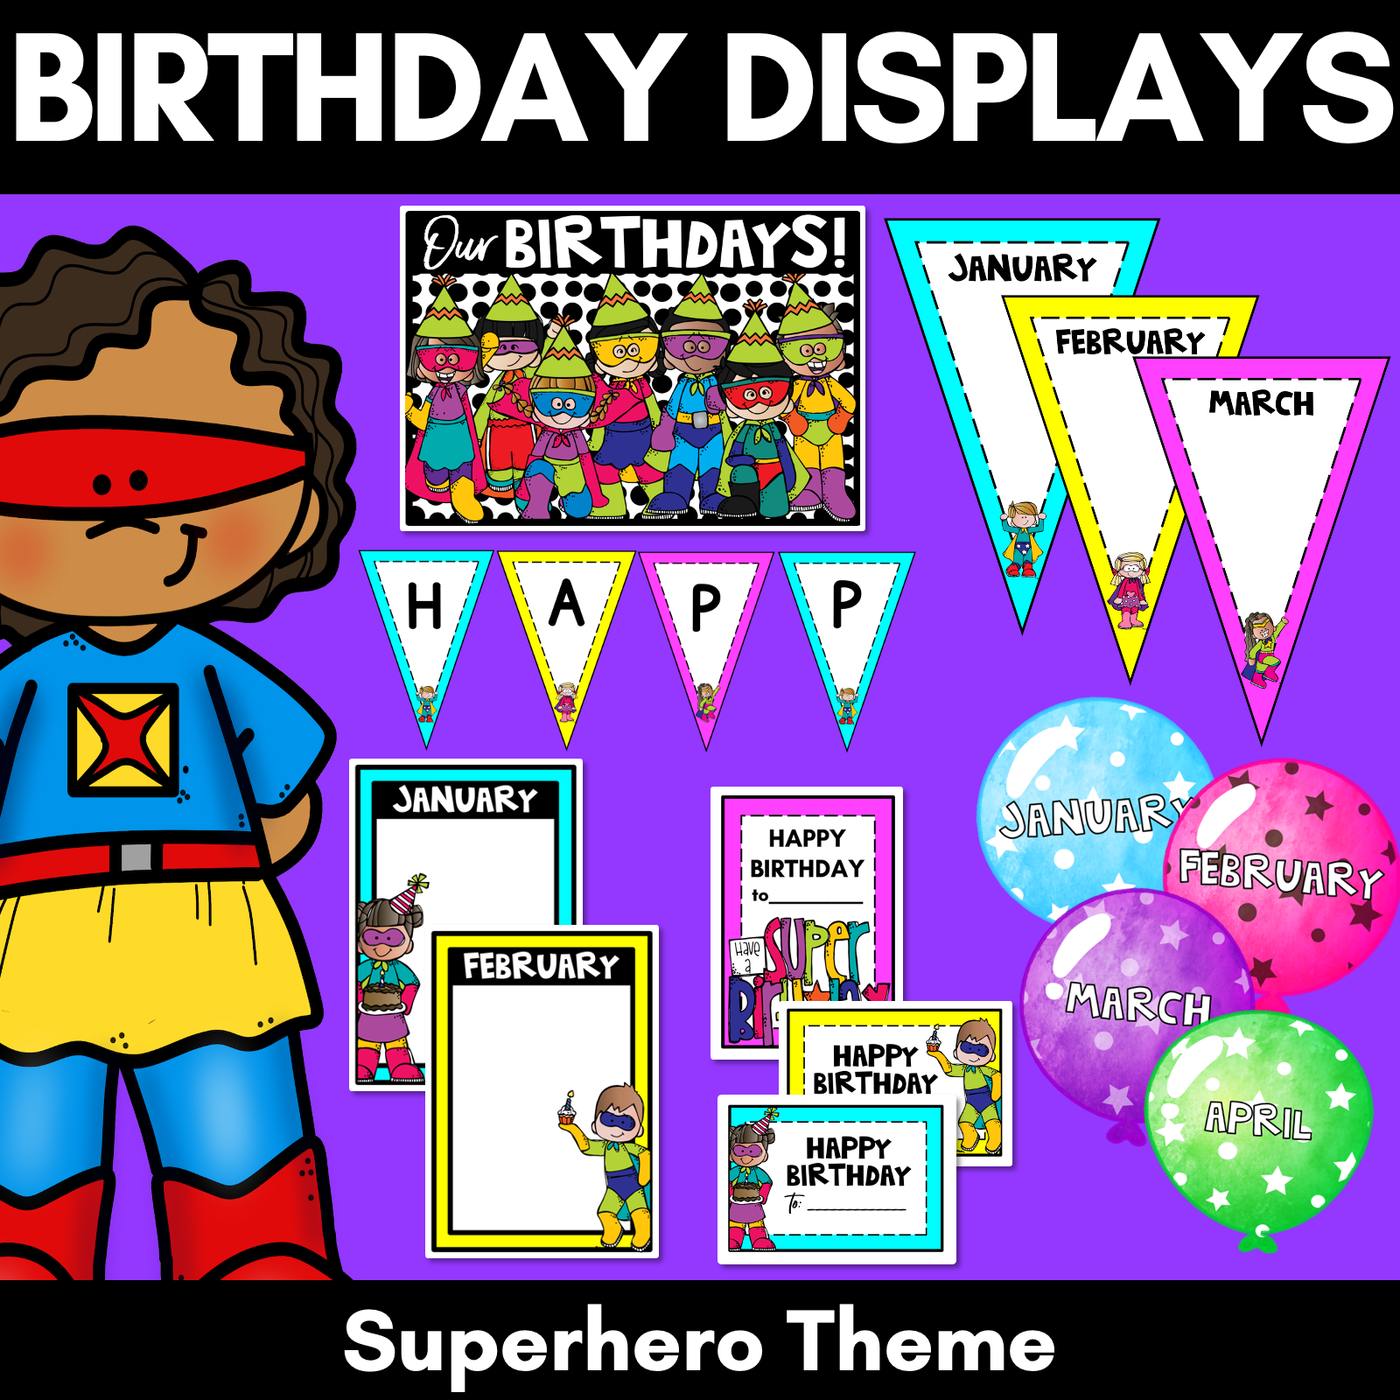 SUPERHERO THEME Birthday Displays